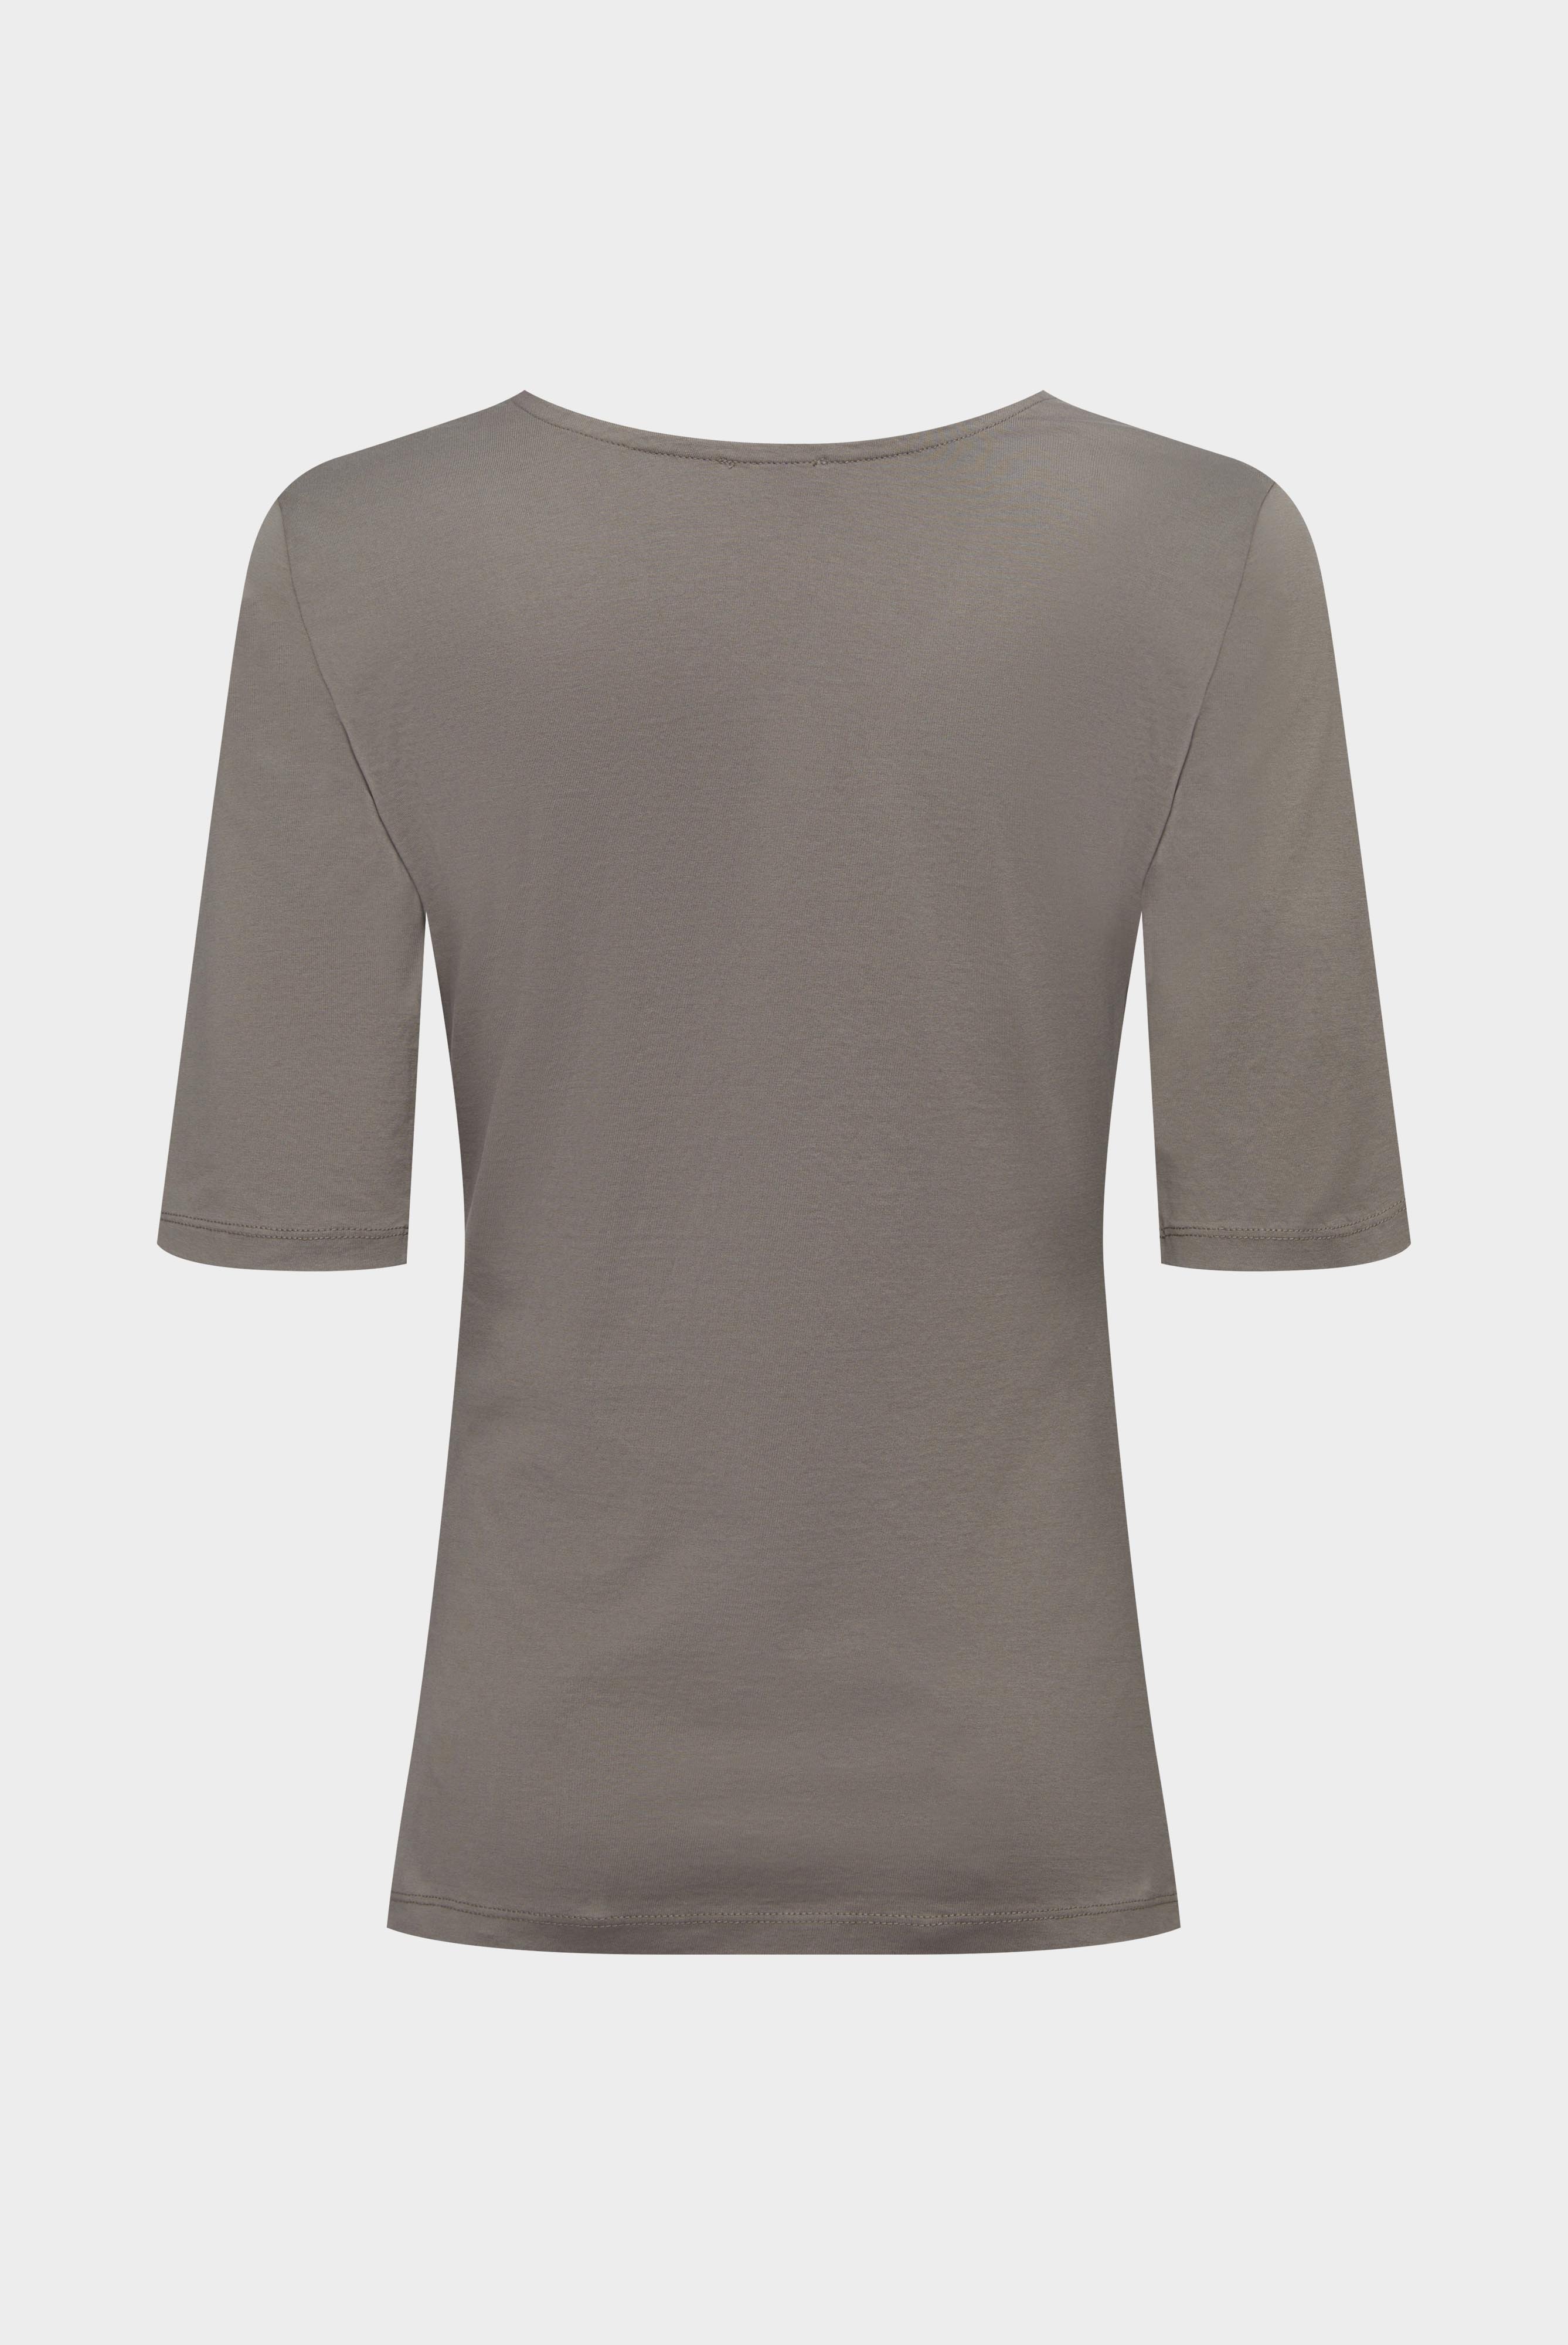 Tops & T-Shirts+Urban Jersey Wide Neck T-Shirt+05.2911..Z20044.060.M